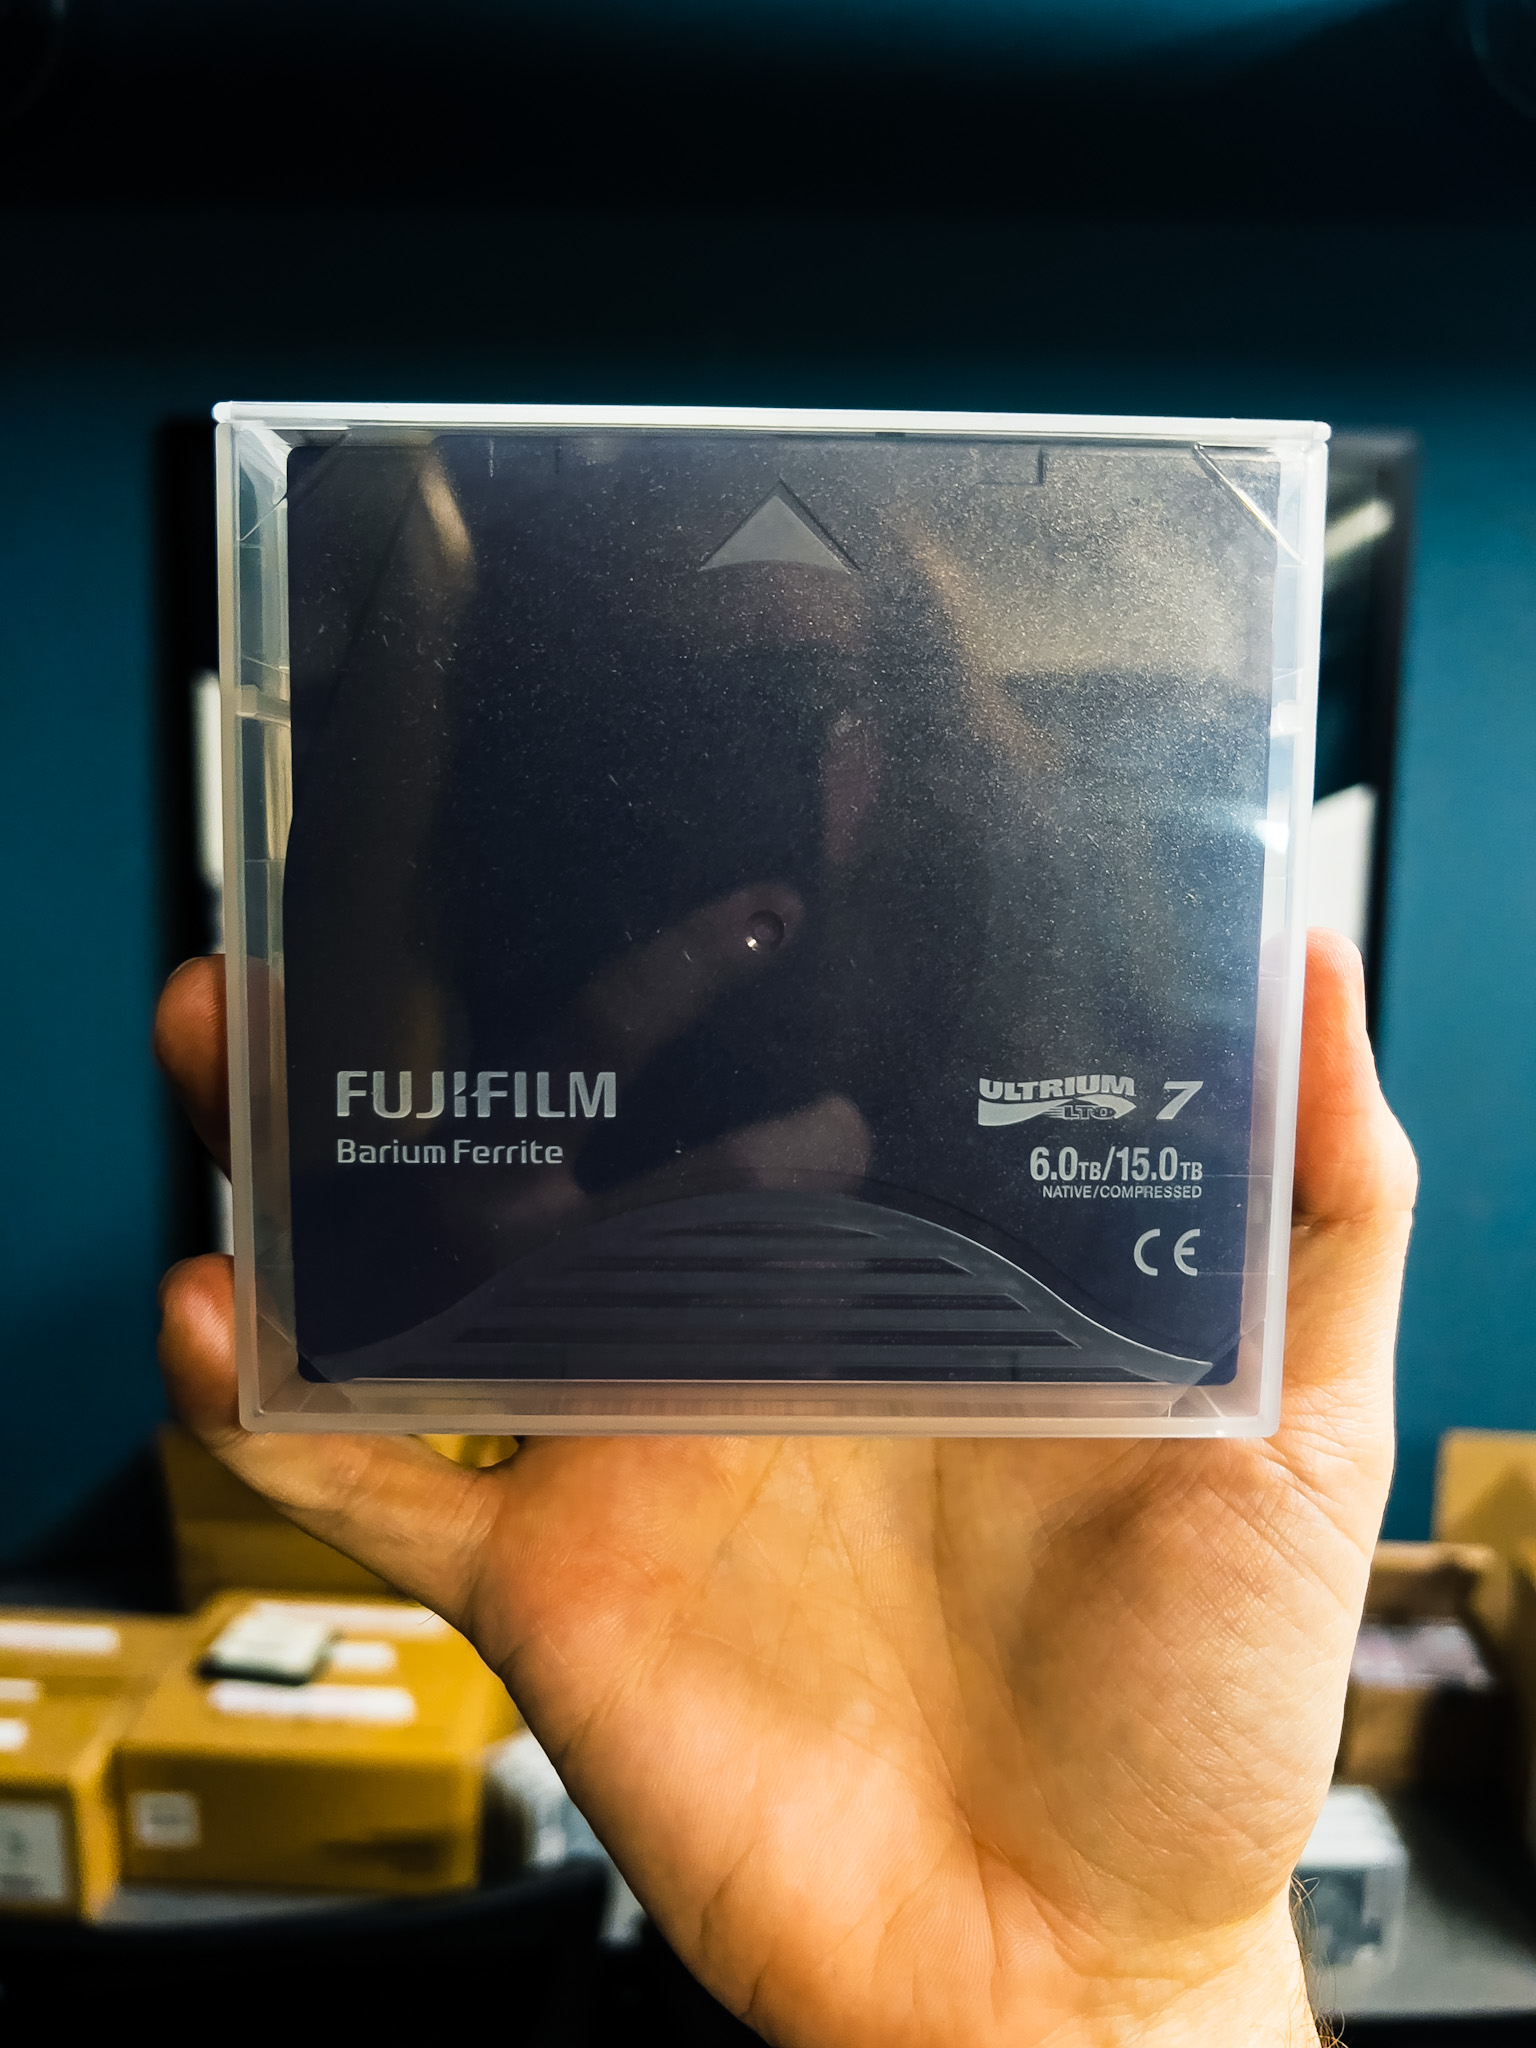 Fujifilm 6 TB LTO Tape in hand